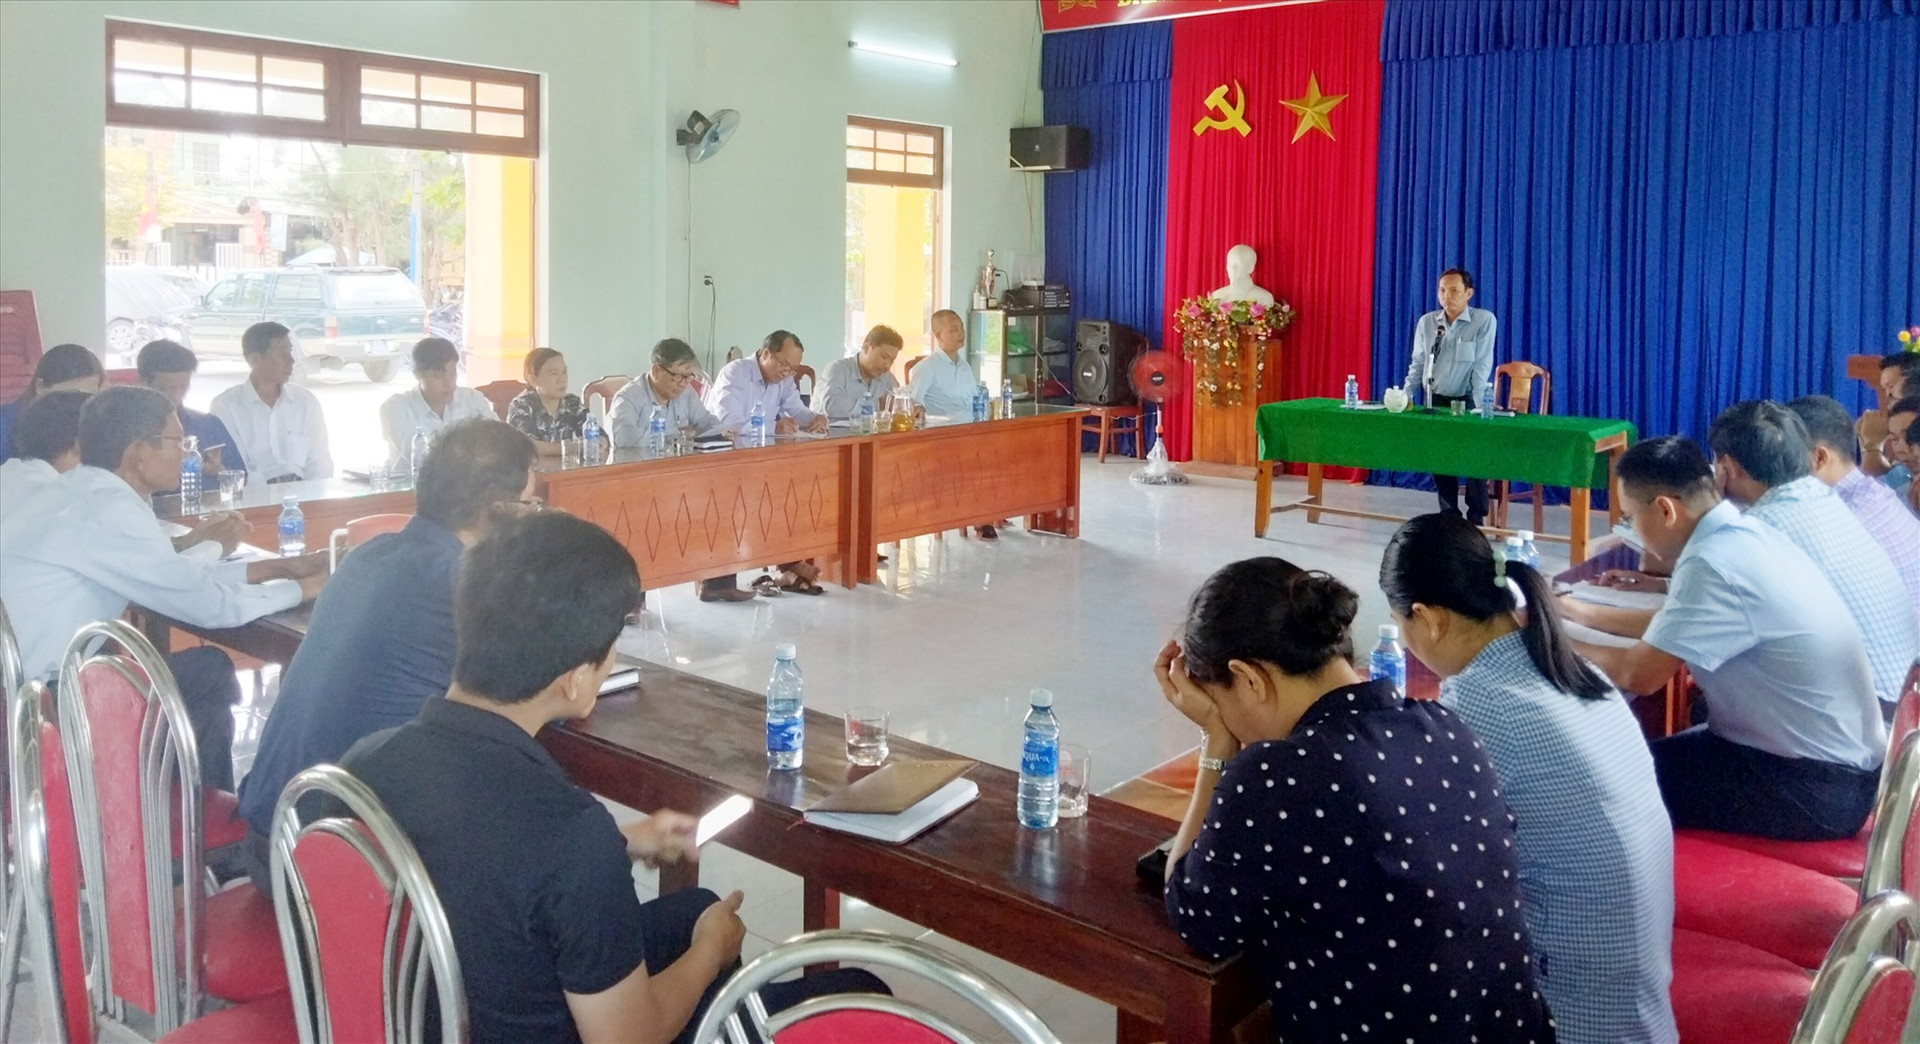 Huyện Thăng Bình tổ chức đối thoại với hộ ông Nguyễn Thành liên quan đến dự án cầu Bình Đào.